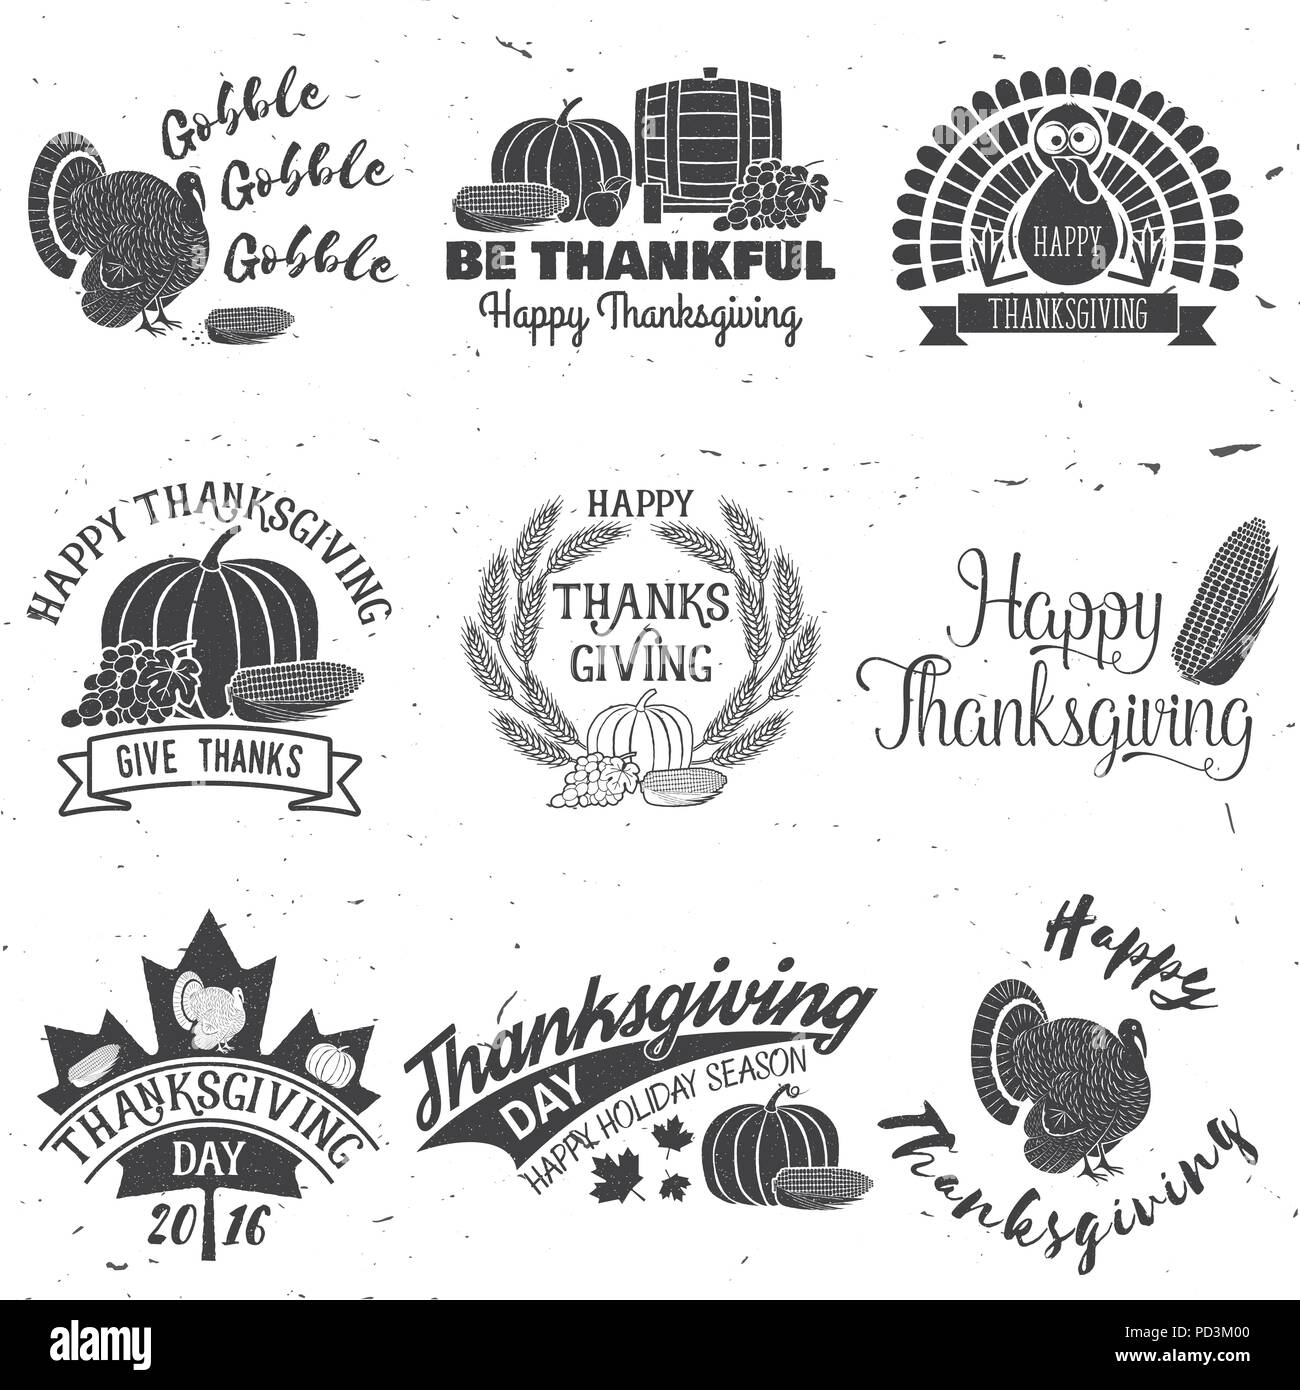 Happy Thanksgiving. Dankbar sein. Vektor Thanksgiving retro Abzeichen. Konzept für Hemd oder Logo, Print, Stempel, Patch. Kürbis, Mais apple Barrel und Traubenmost Stock Vektor